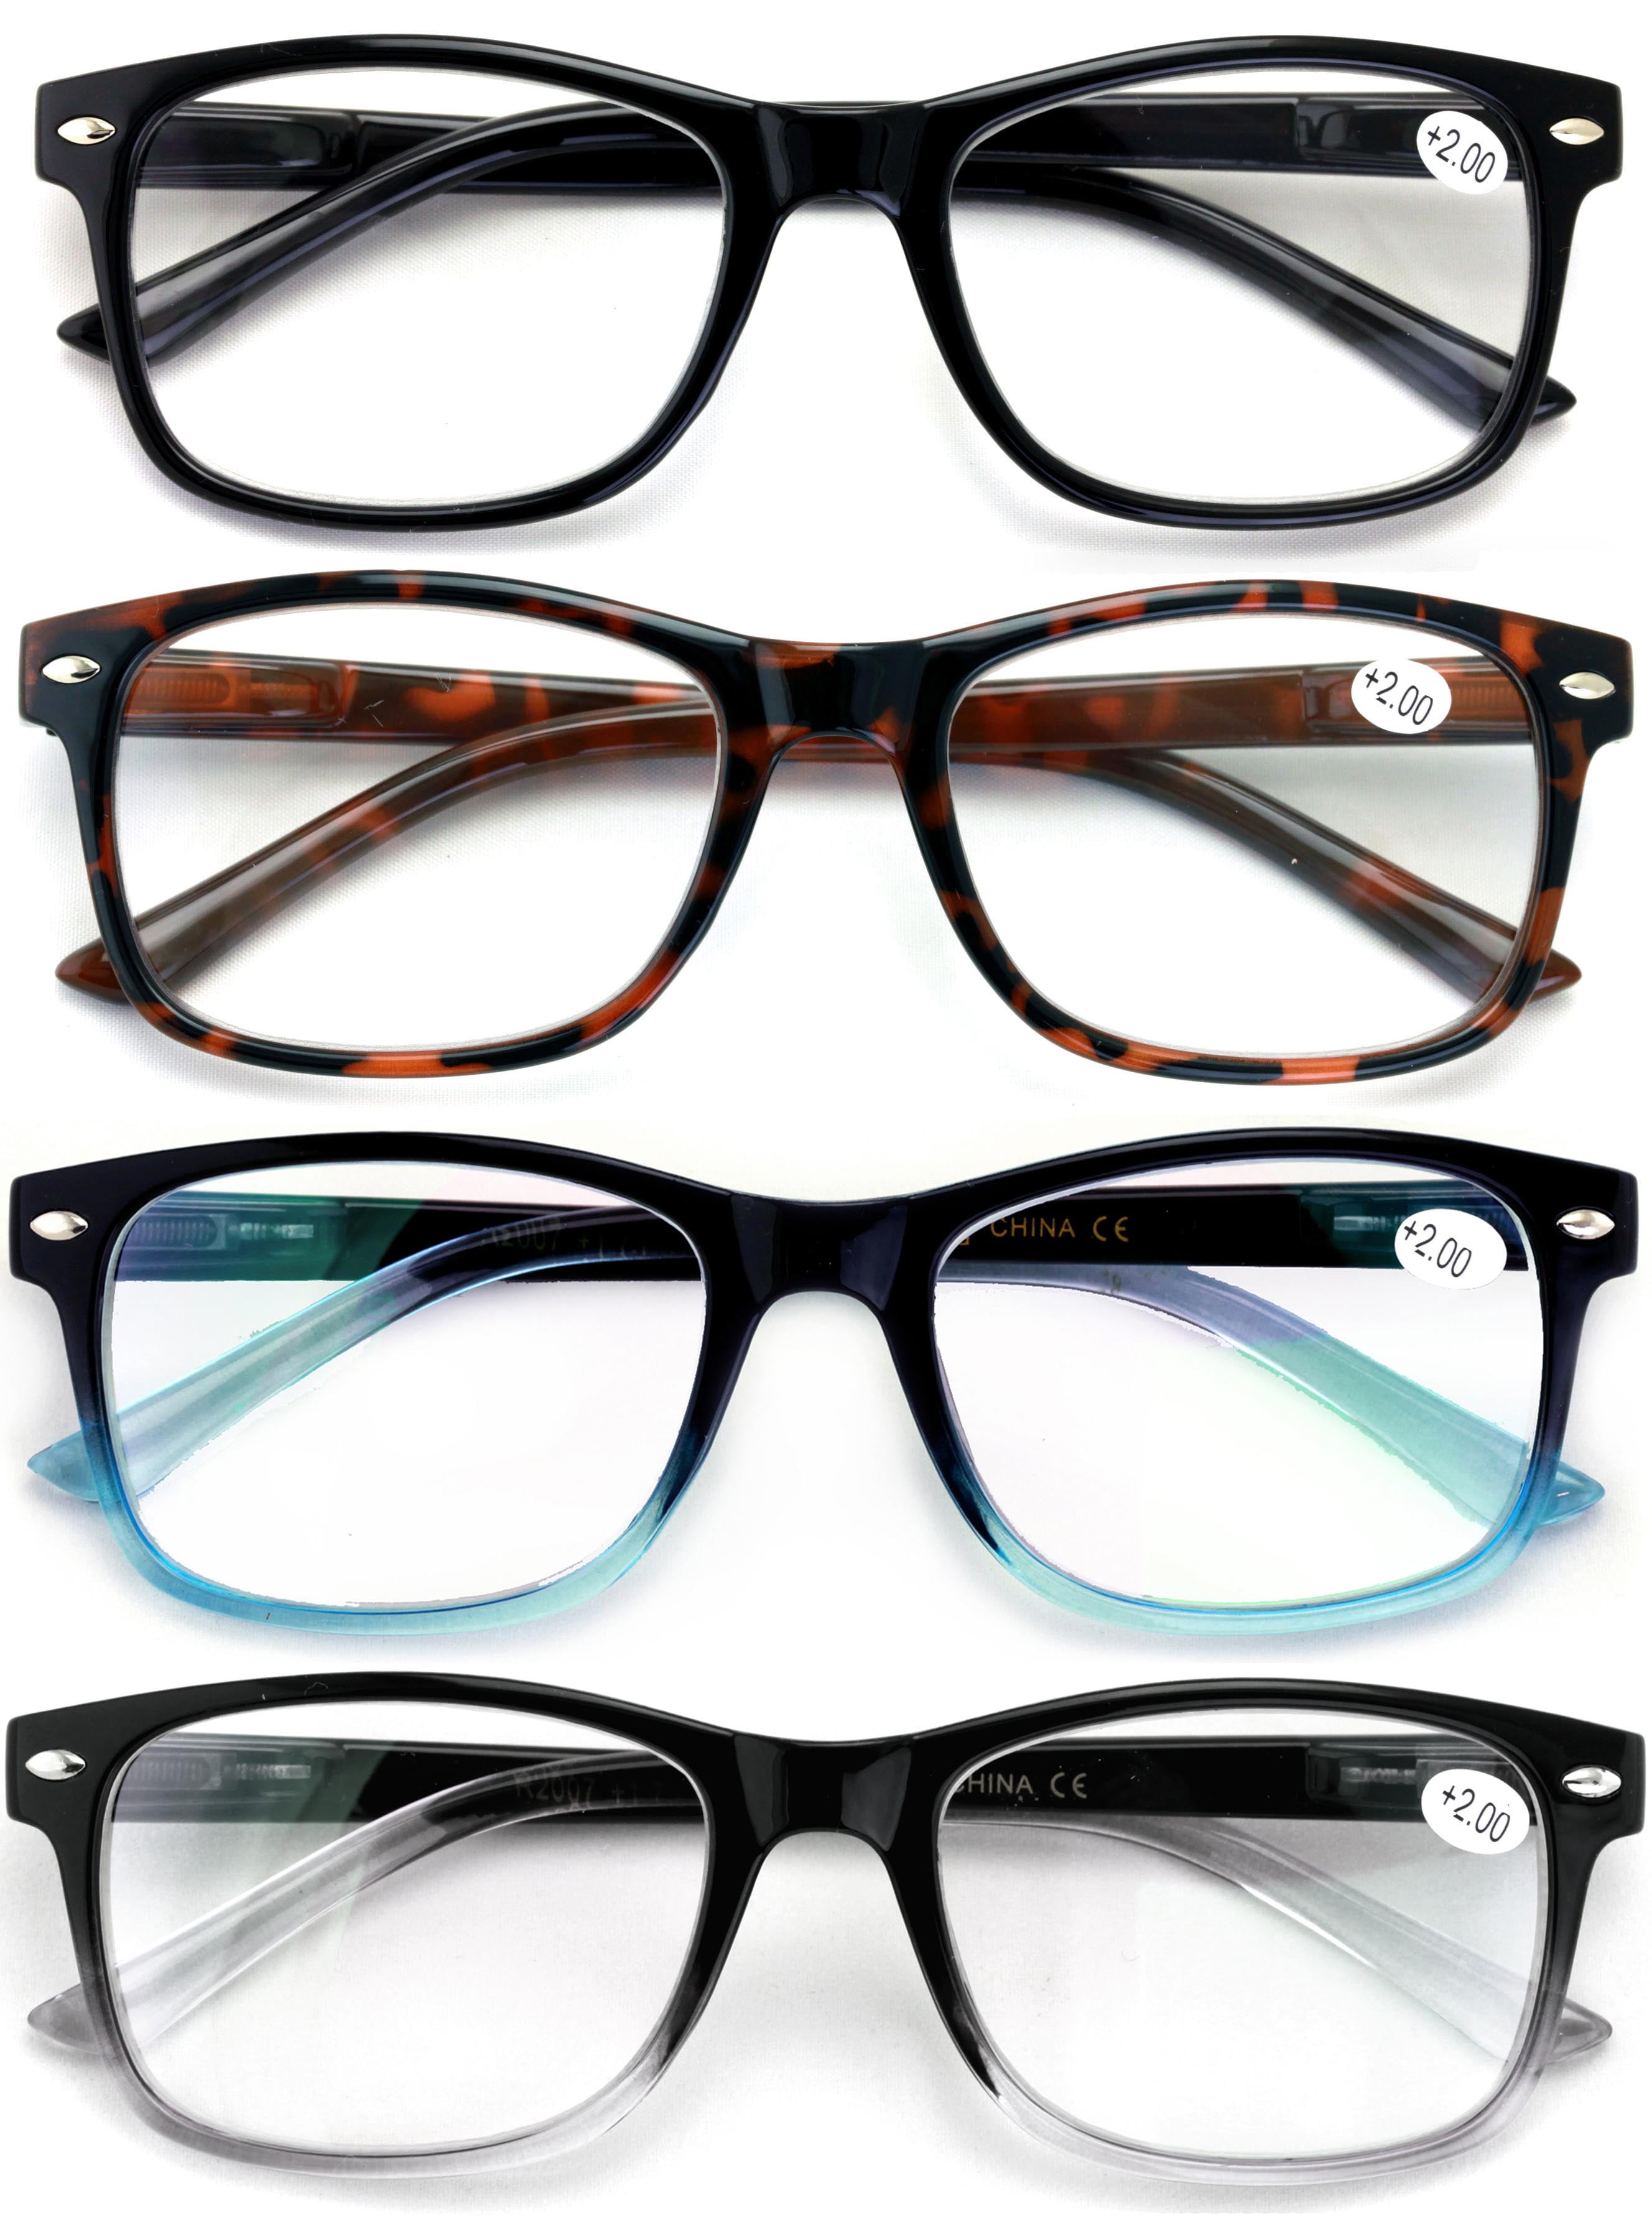 6 Pack Reading Glasses Blue Light Blocking Computer Readers for Women Men Spring Hinge Colorful Anti UV Ray Eyeglasses 